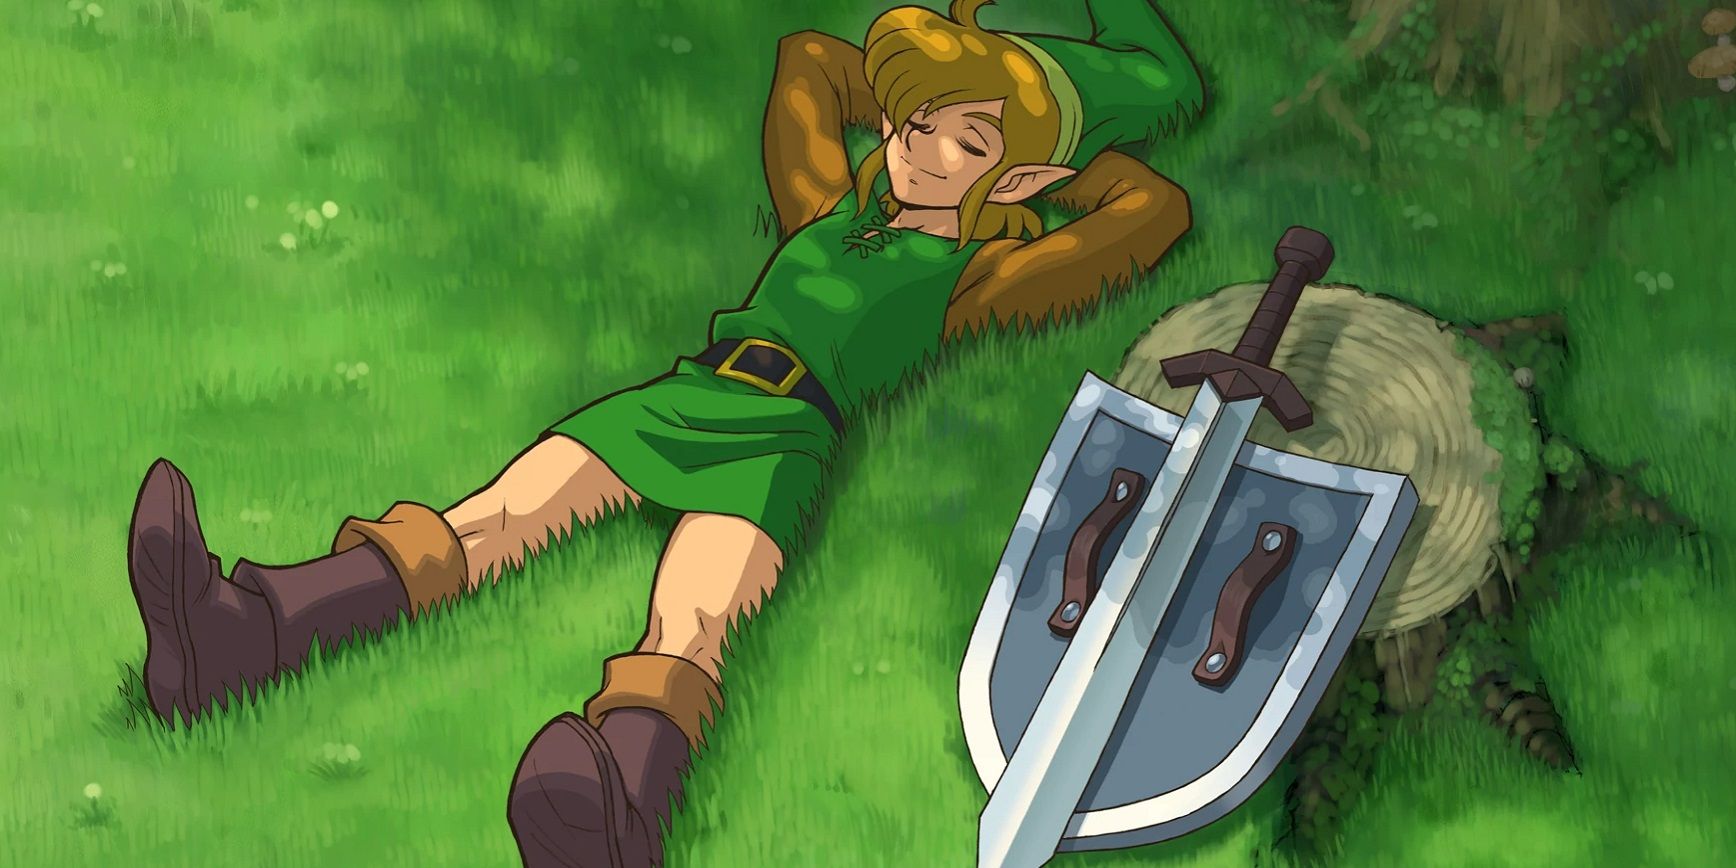 Zelda-Gameboy-Remake-Link-Under-Tree-25th-Anniversary